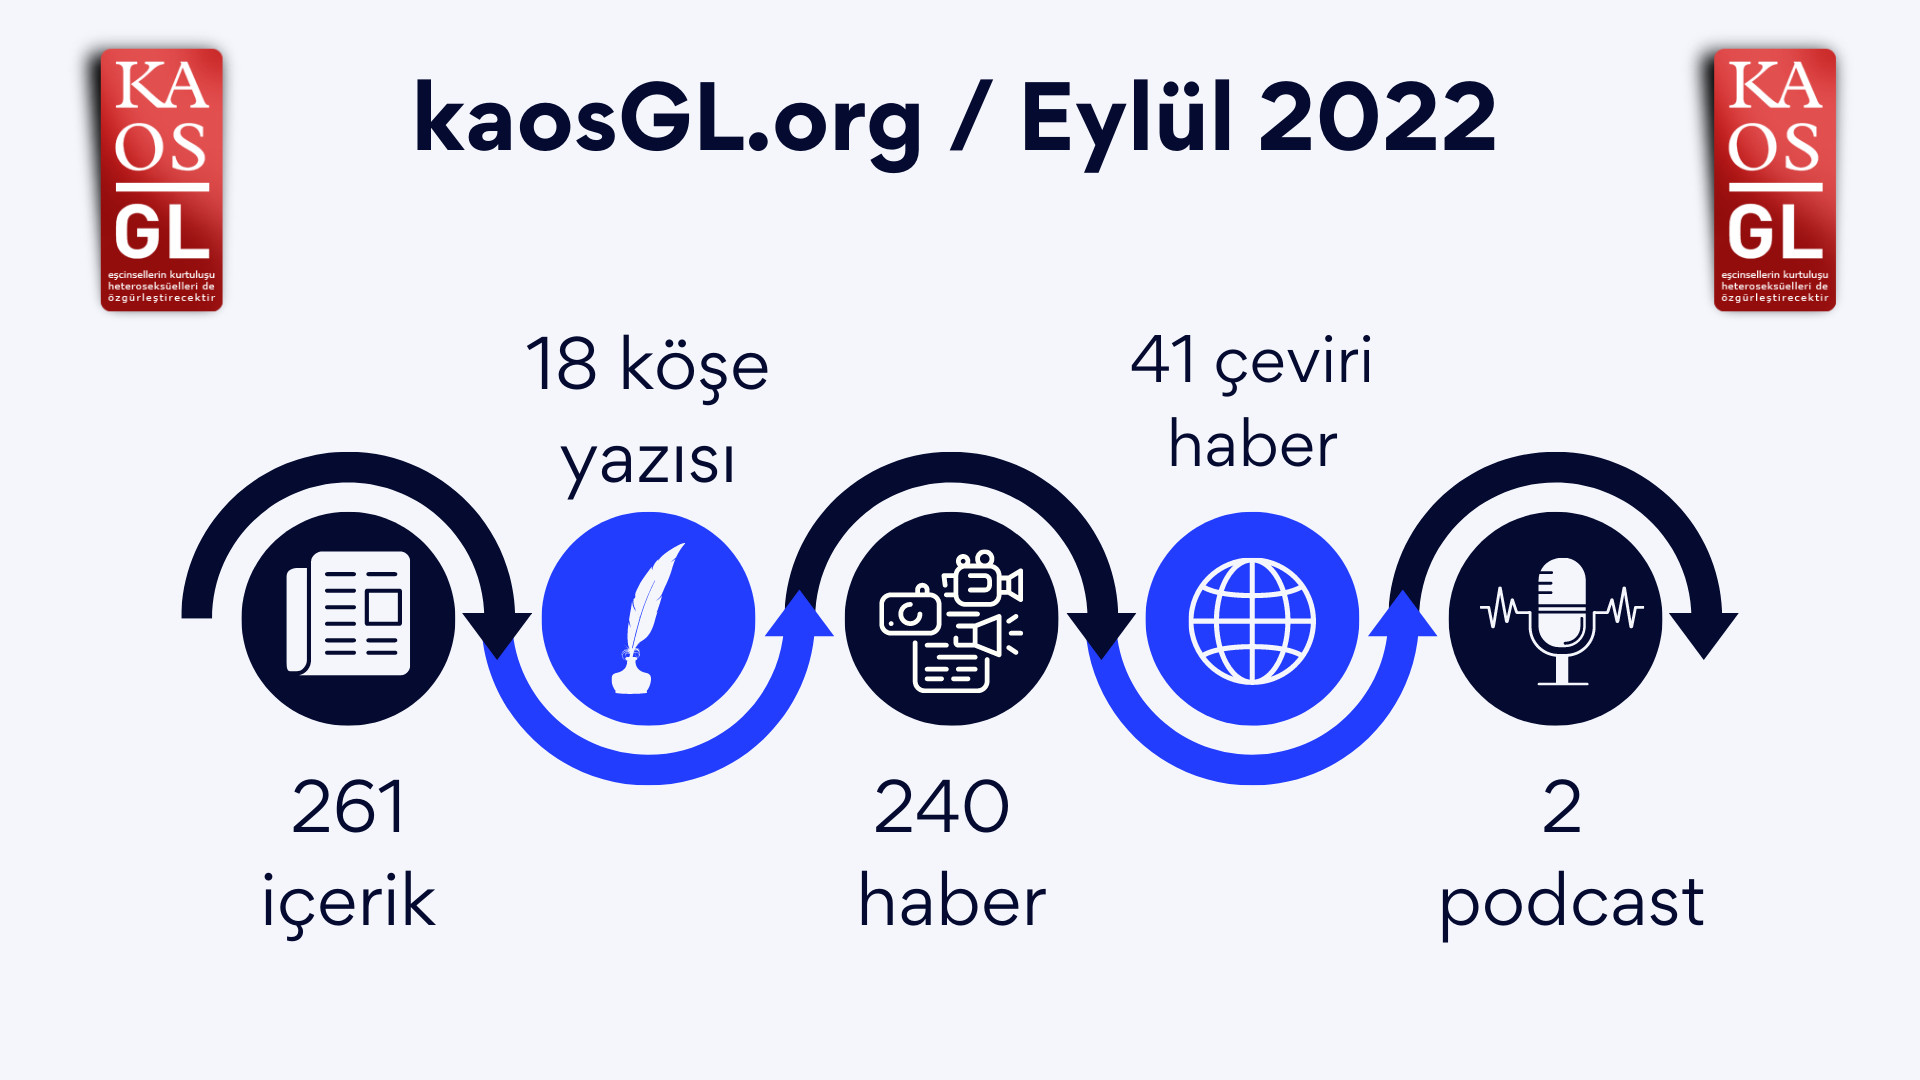 KaosGL.org Eylül 2022’de ne yaptı? Kaos GL - LGBTİ+ Haber Portalı